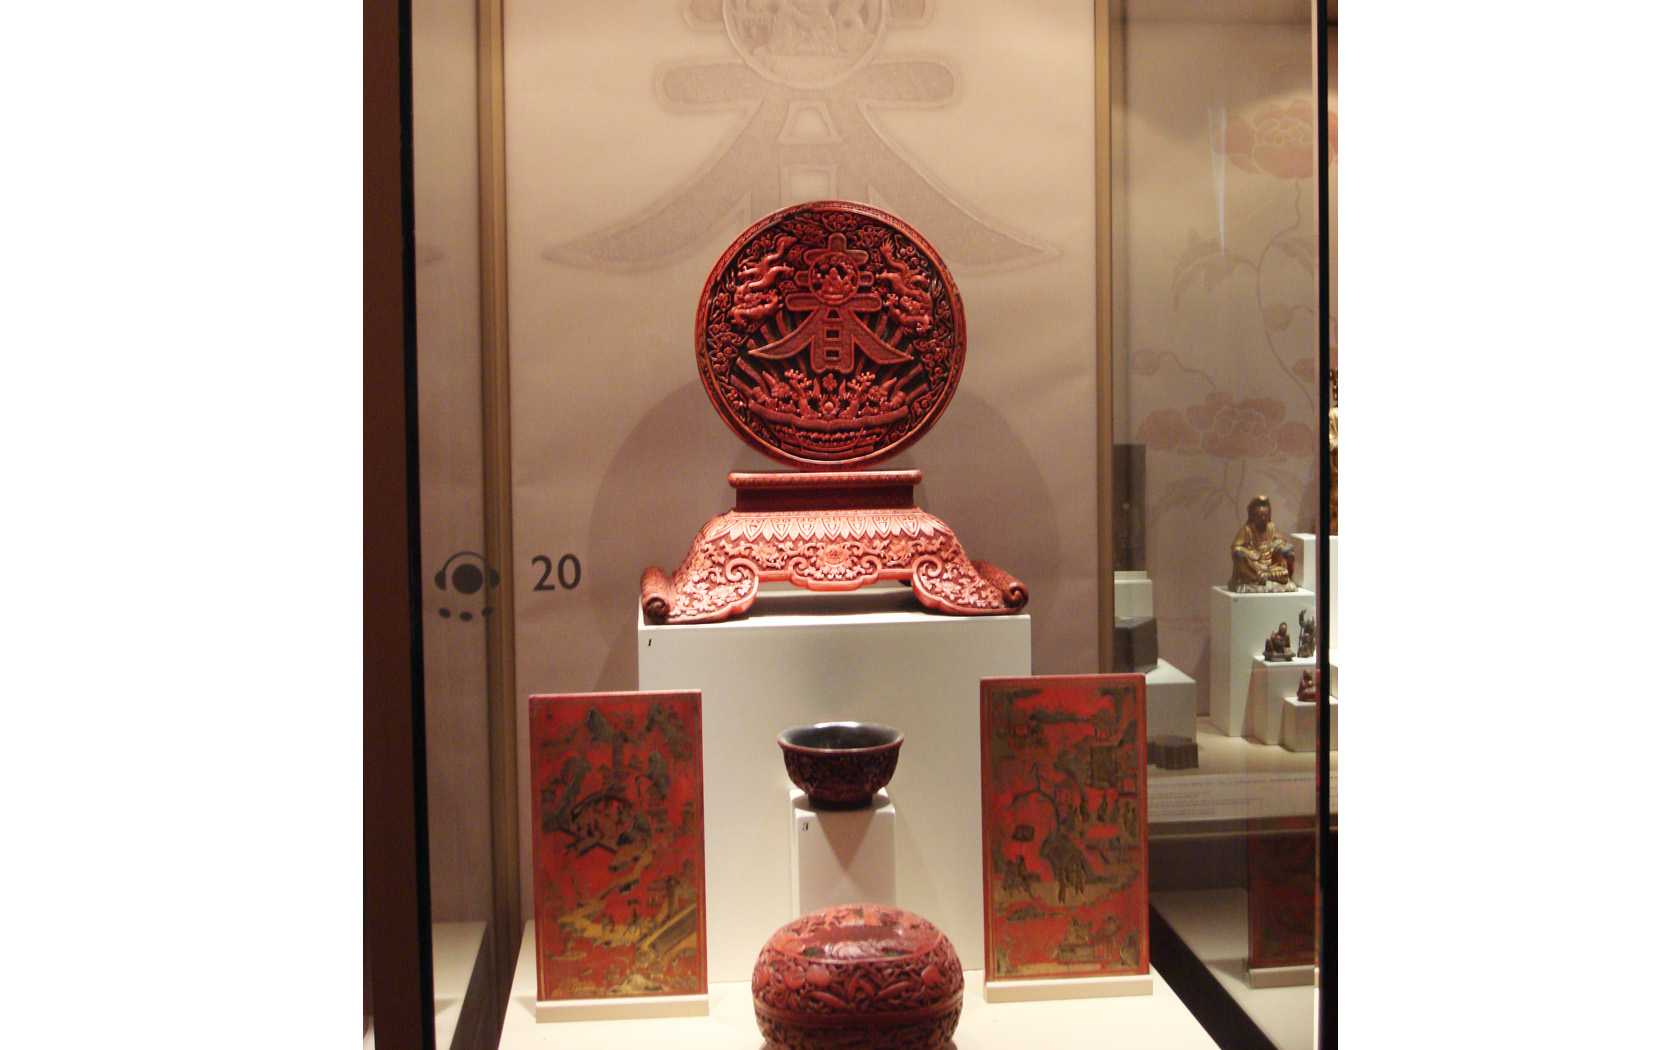 Μουσείο ασιατικής τέχνης κέρκυρα